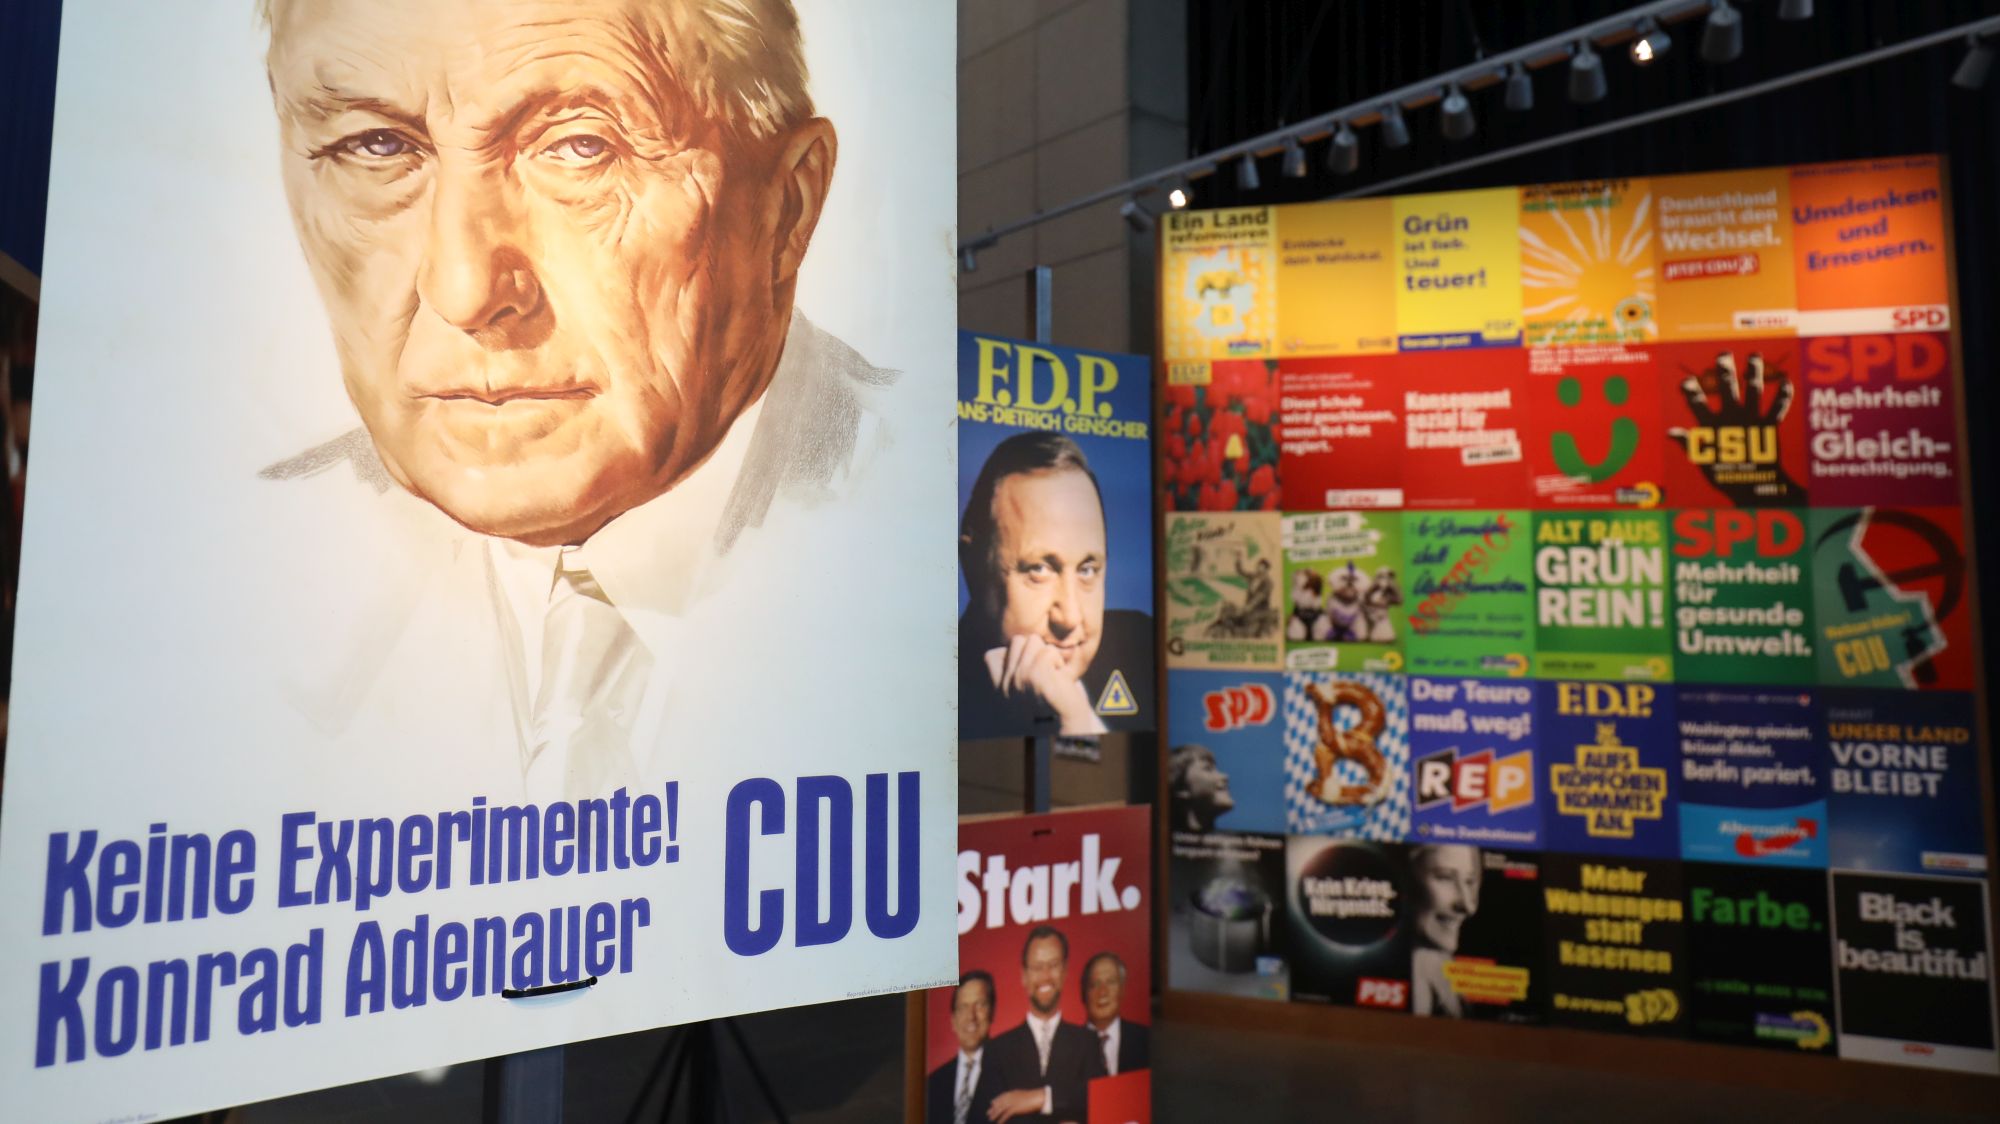 Das berühmte CDU-Plakat mit Konrad Adenauer und dem Slogan Keine Experimente und eine große Wand mit vielen weiteren Plakaten im Hintergrund.